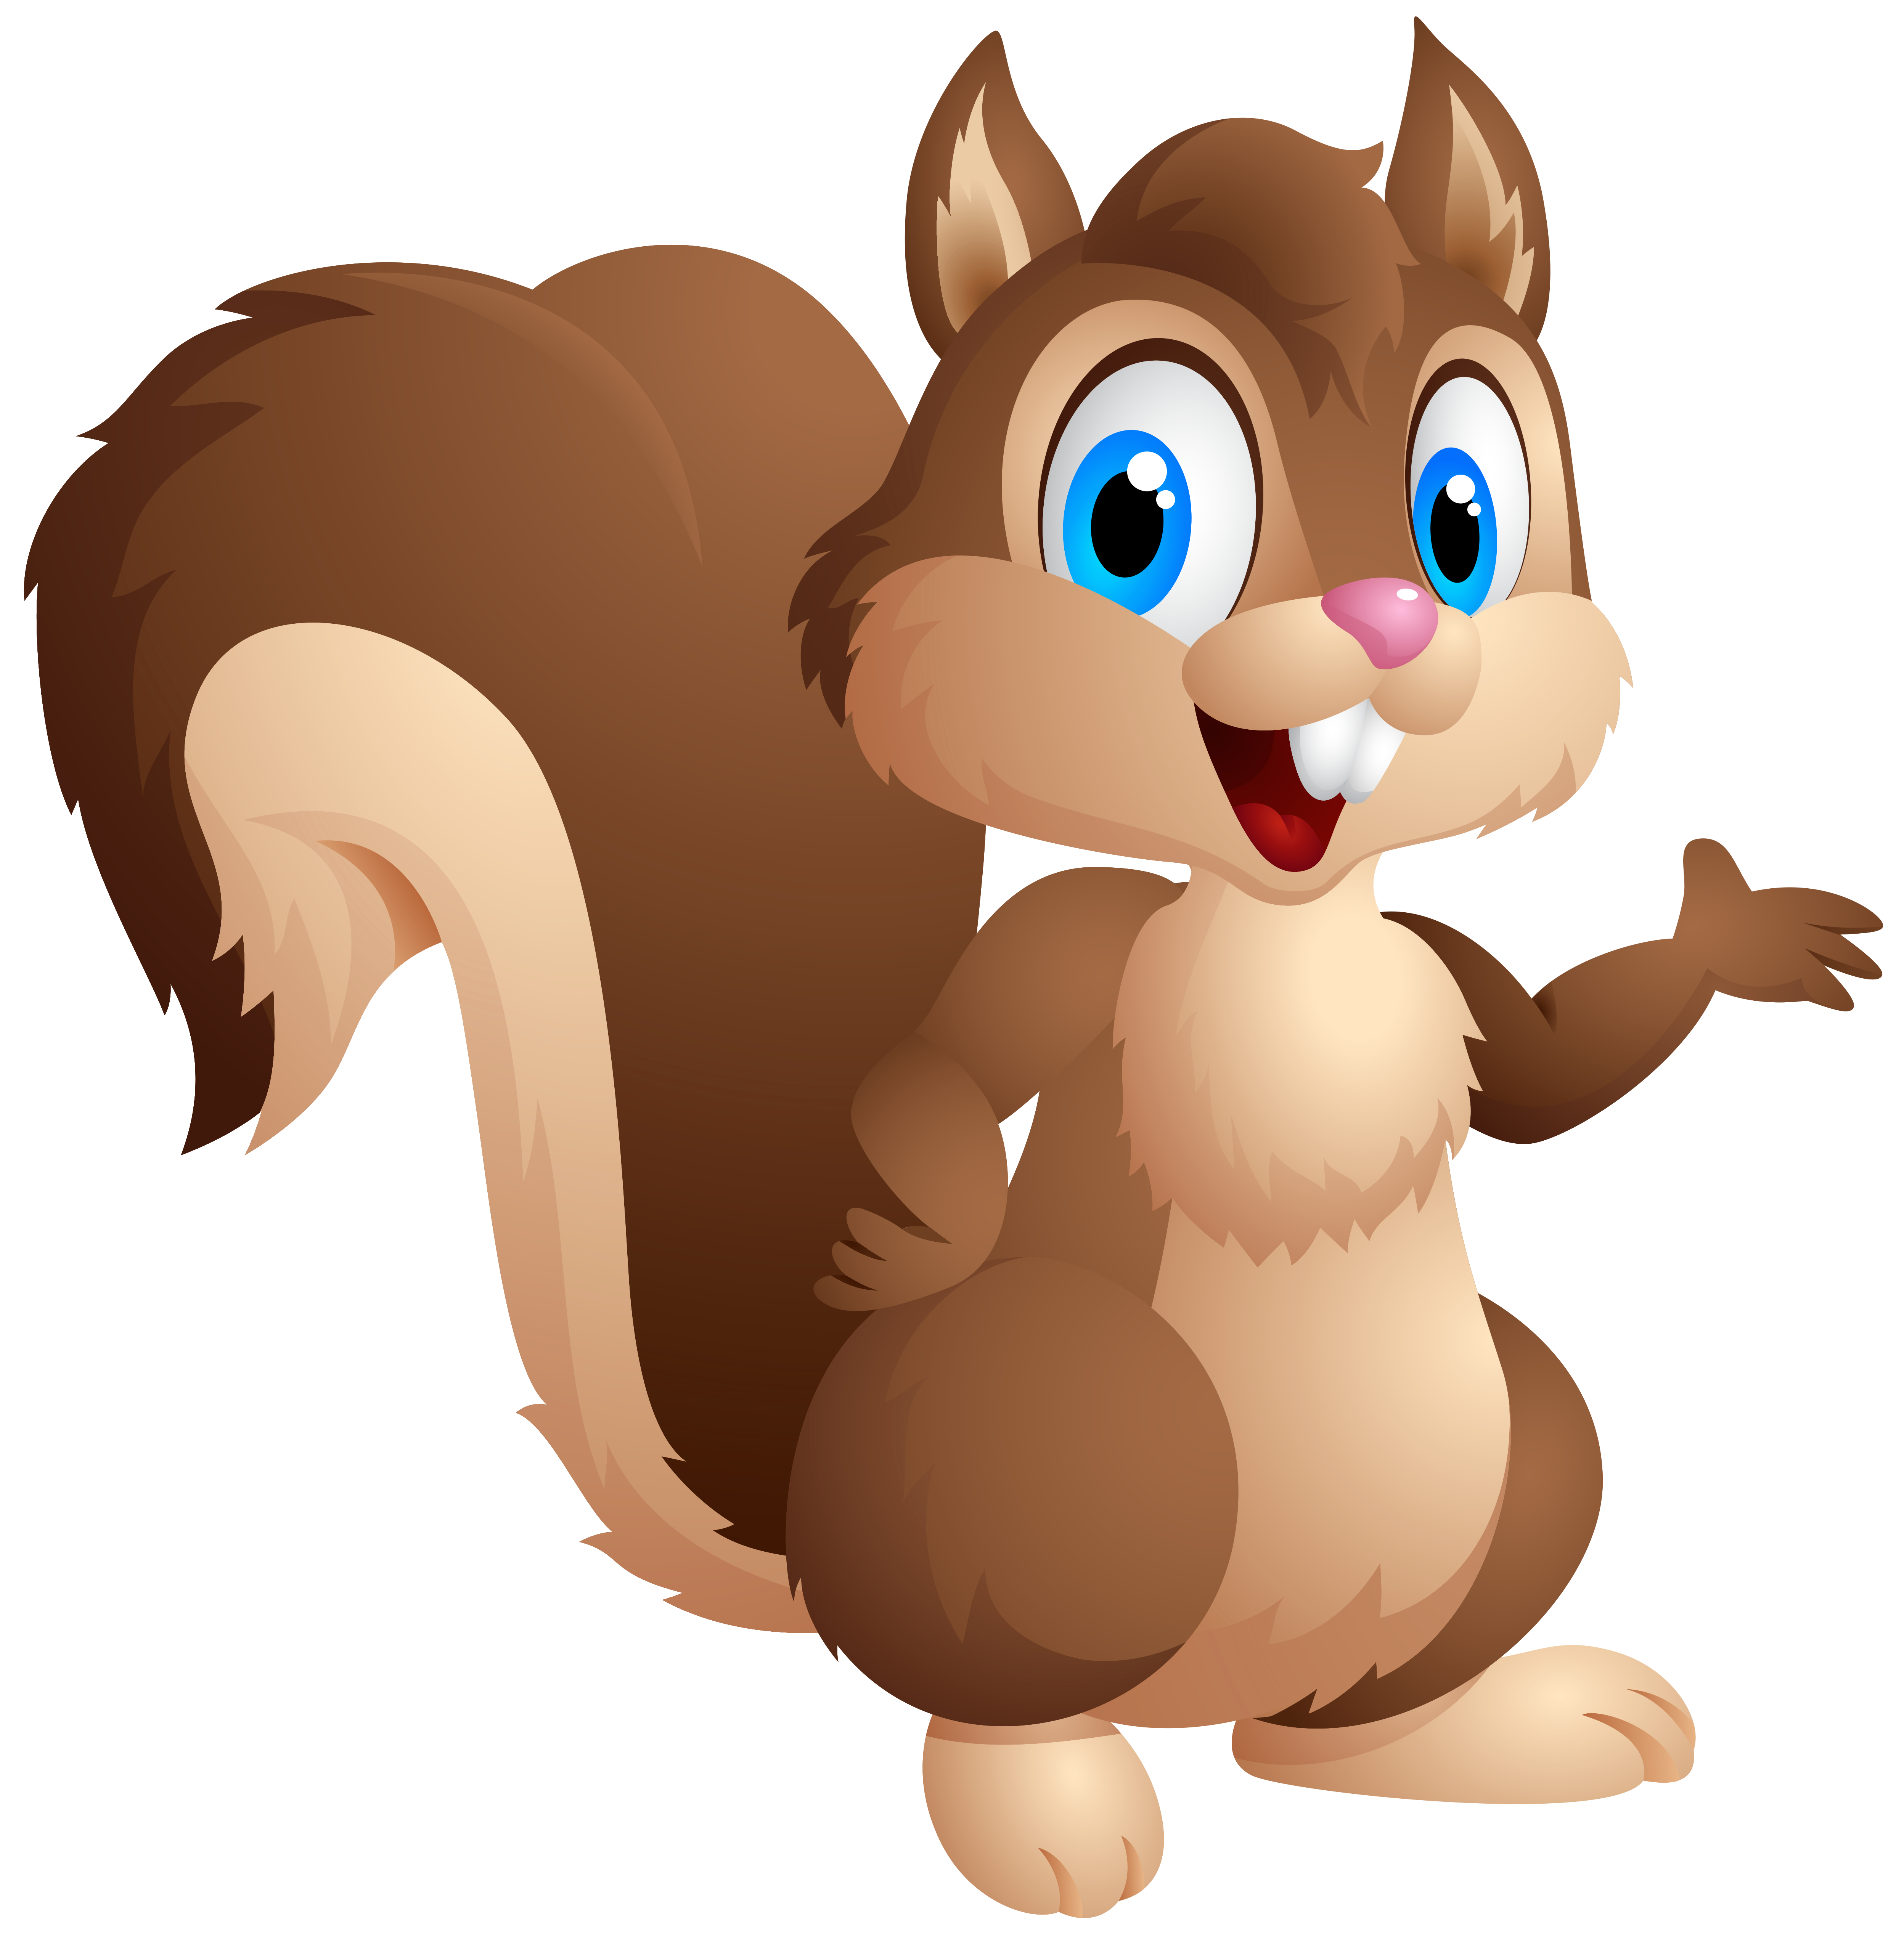 Gray Squirrel Cute Chipmunk Eastern Cartoon Clipart